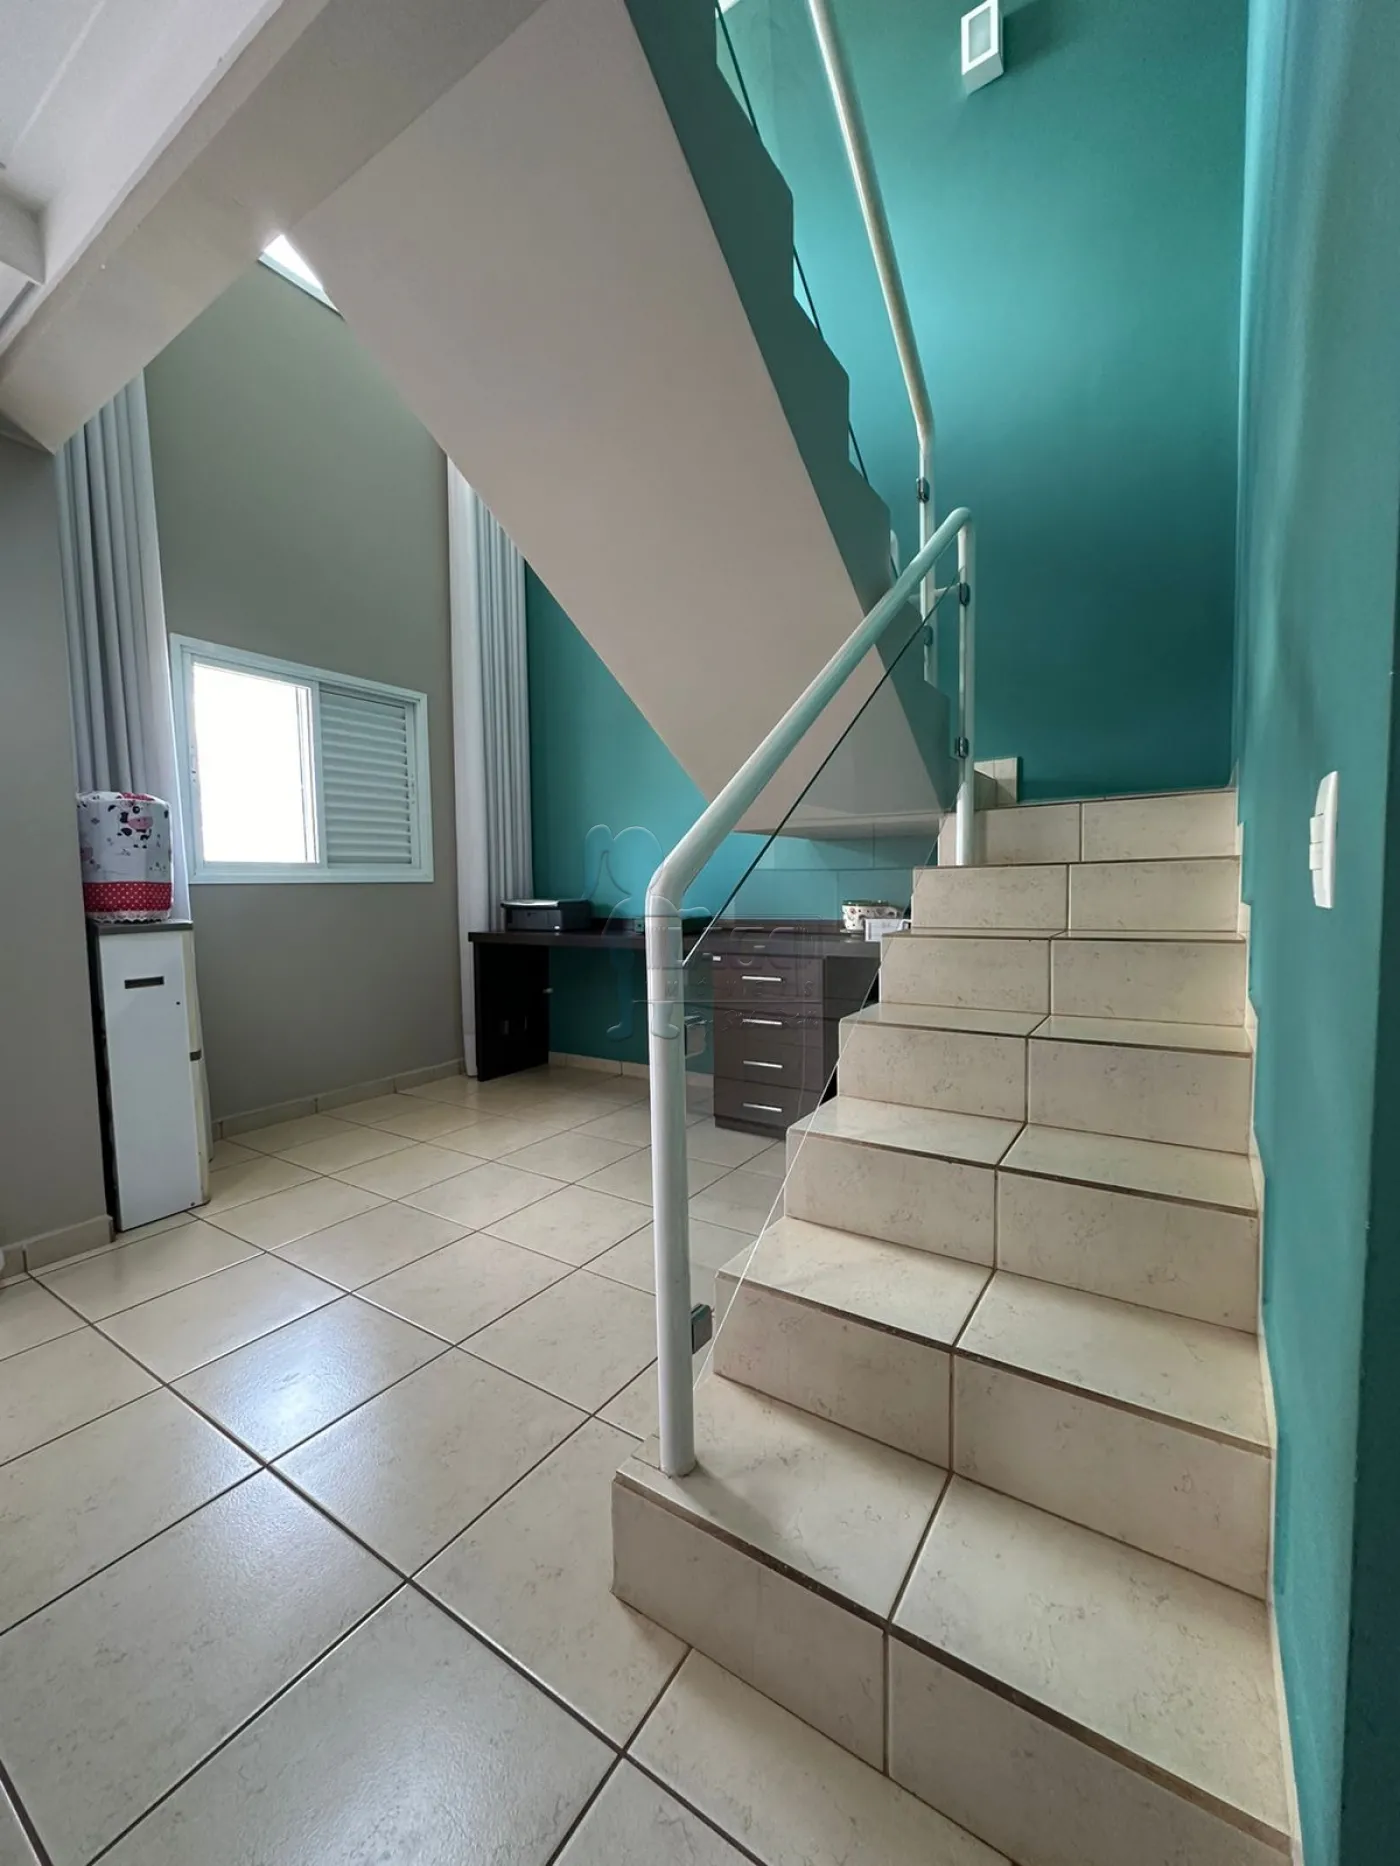 Comprar Apartamento / Duplex em Jaboticabal R$ 650.000,00 - Foto 4